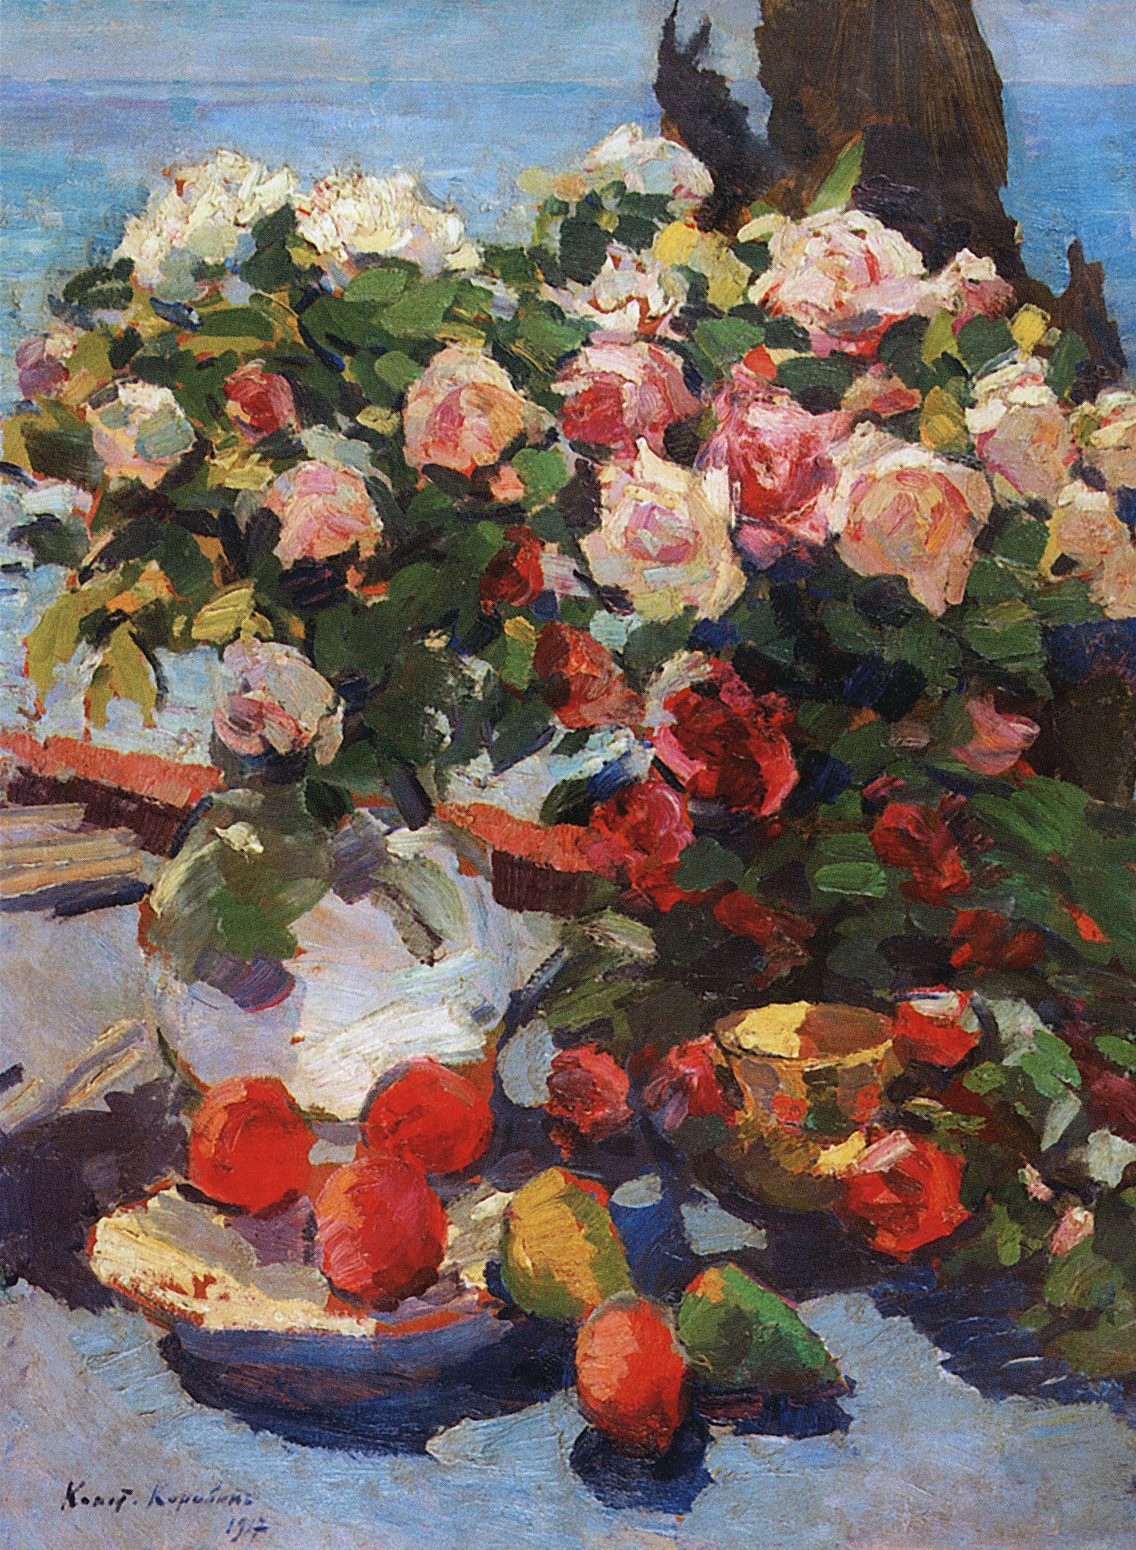 Коровин К.. Розы и фрукты. 1917